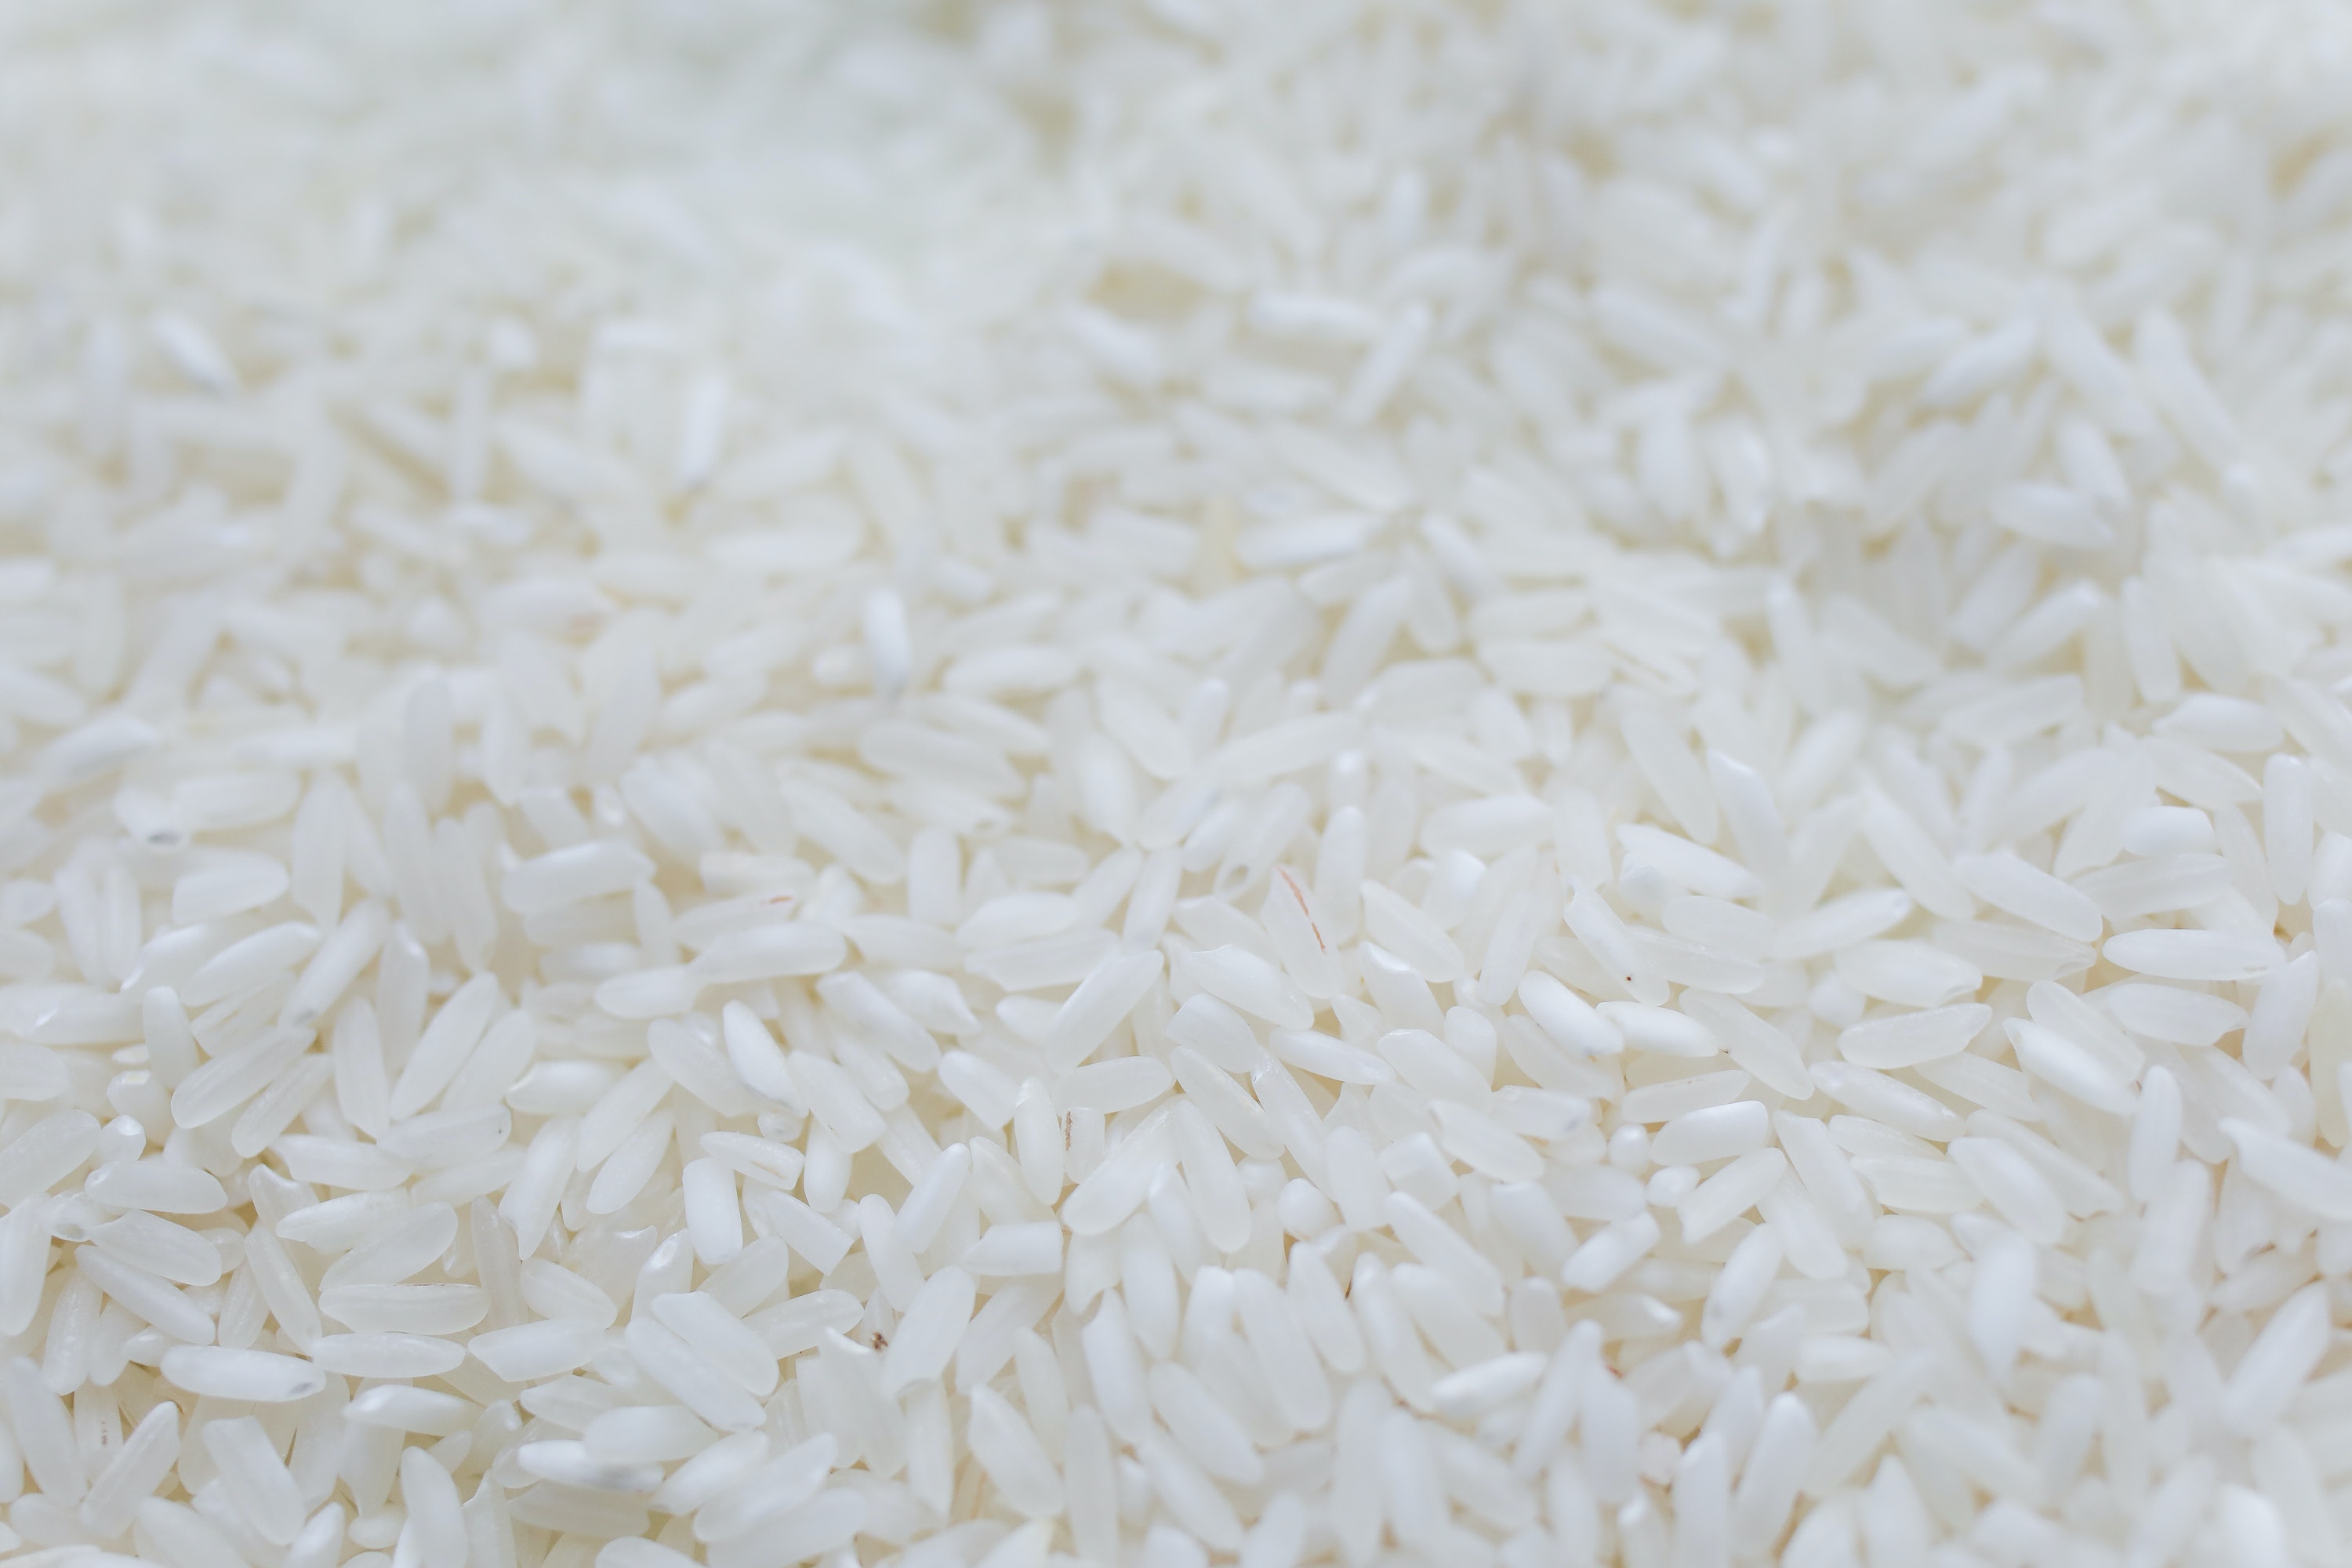 Indie zakazują eksportu ryżu